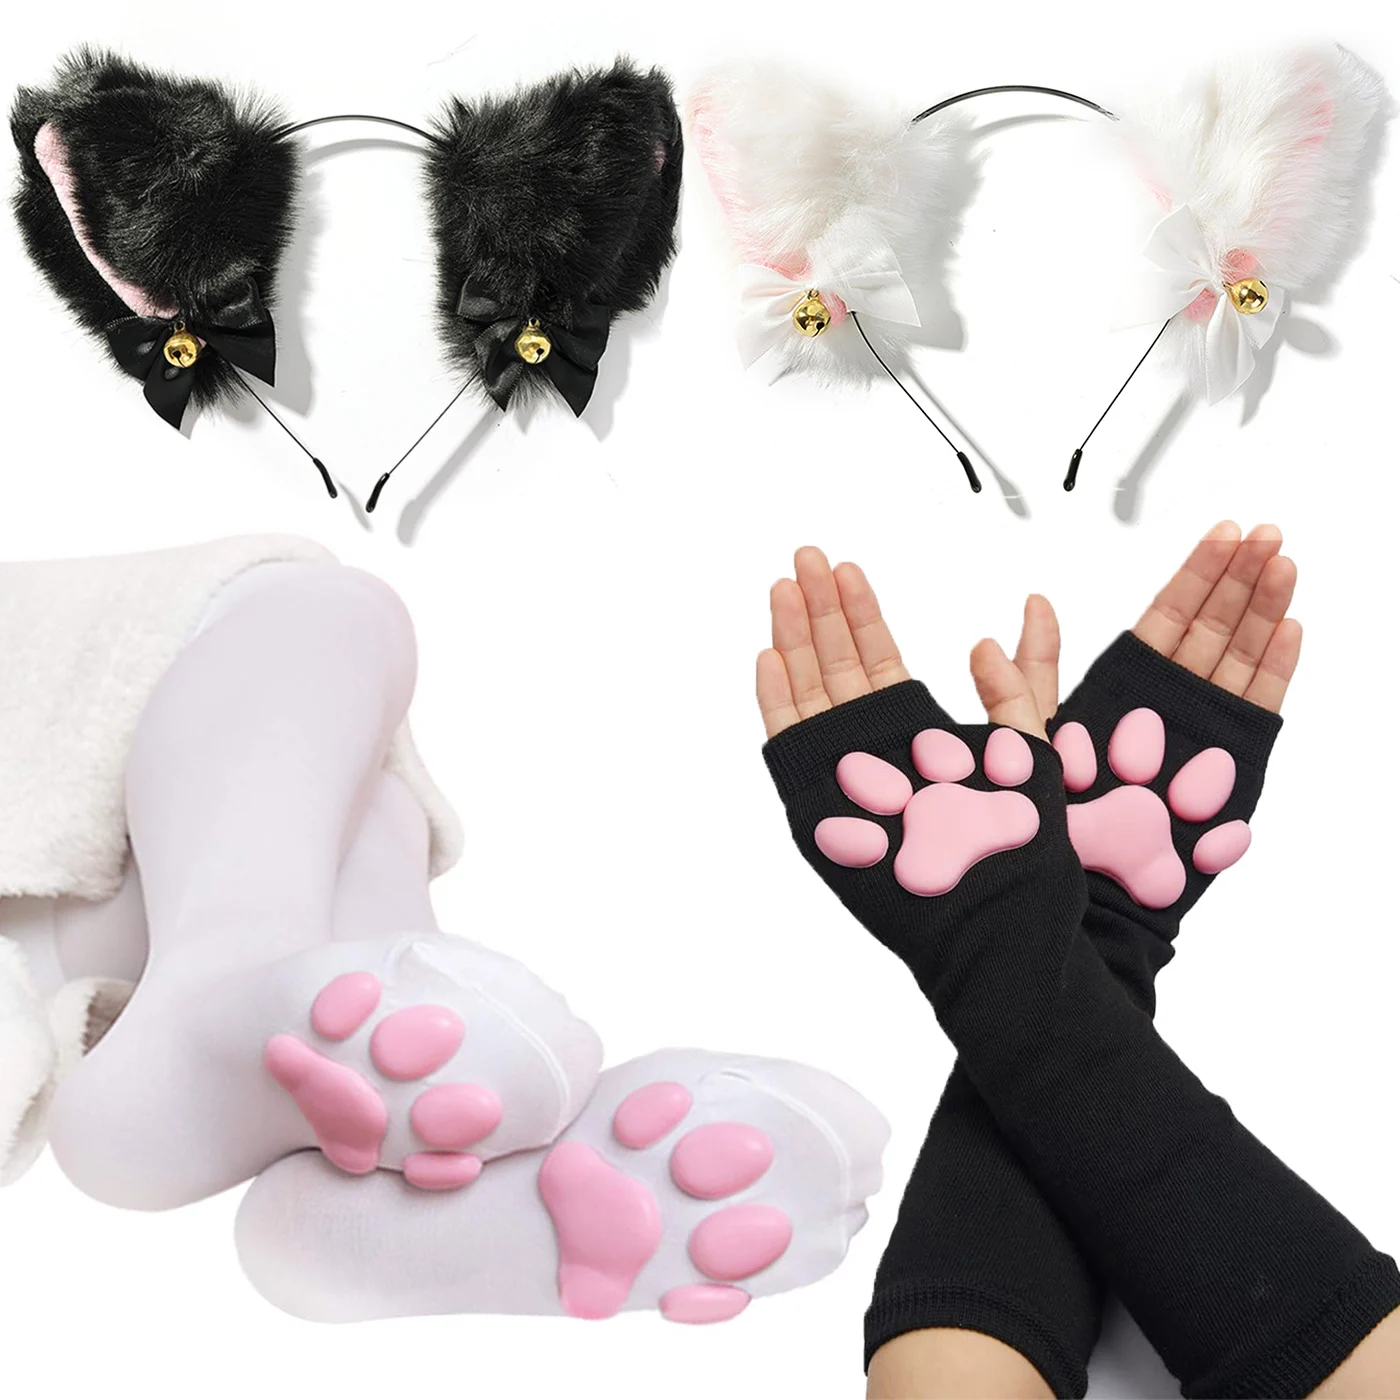 Носки в виде кошачьих лап милые женские чулки с 3D кошачьими лапами стиле